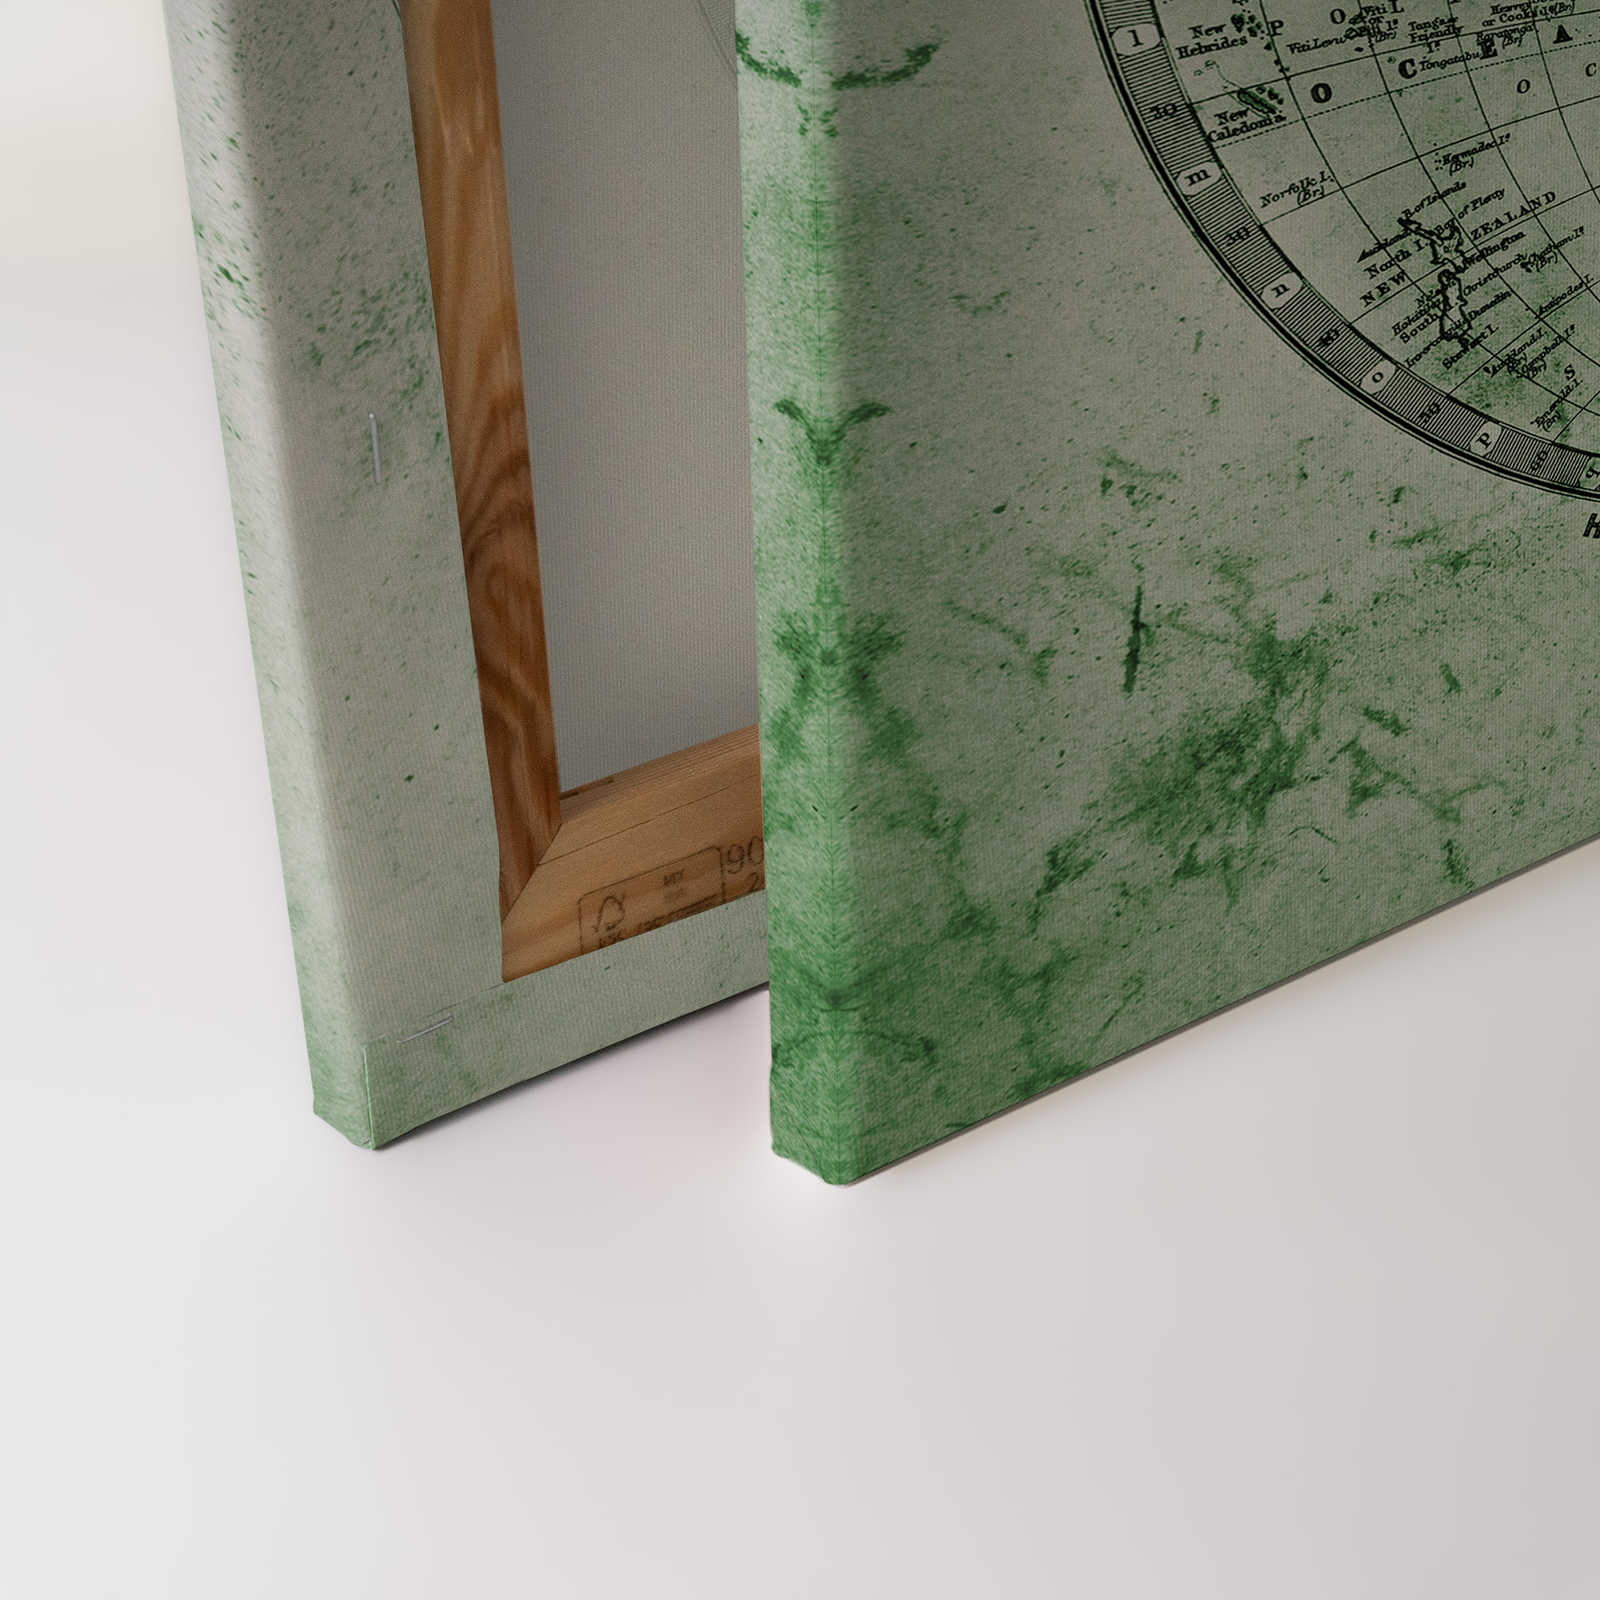             Leinwand mit Vintage Weltkarte in Hemisphären | grün, grau, weiß – 0,90 m x 0,60 m
        